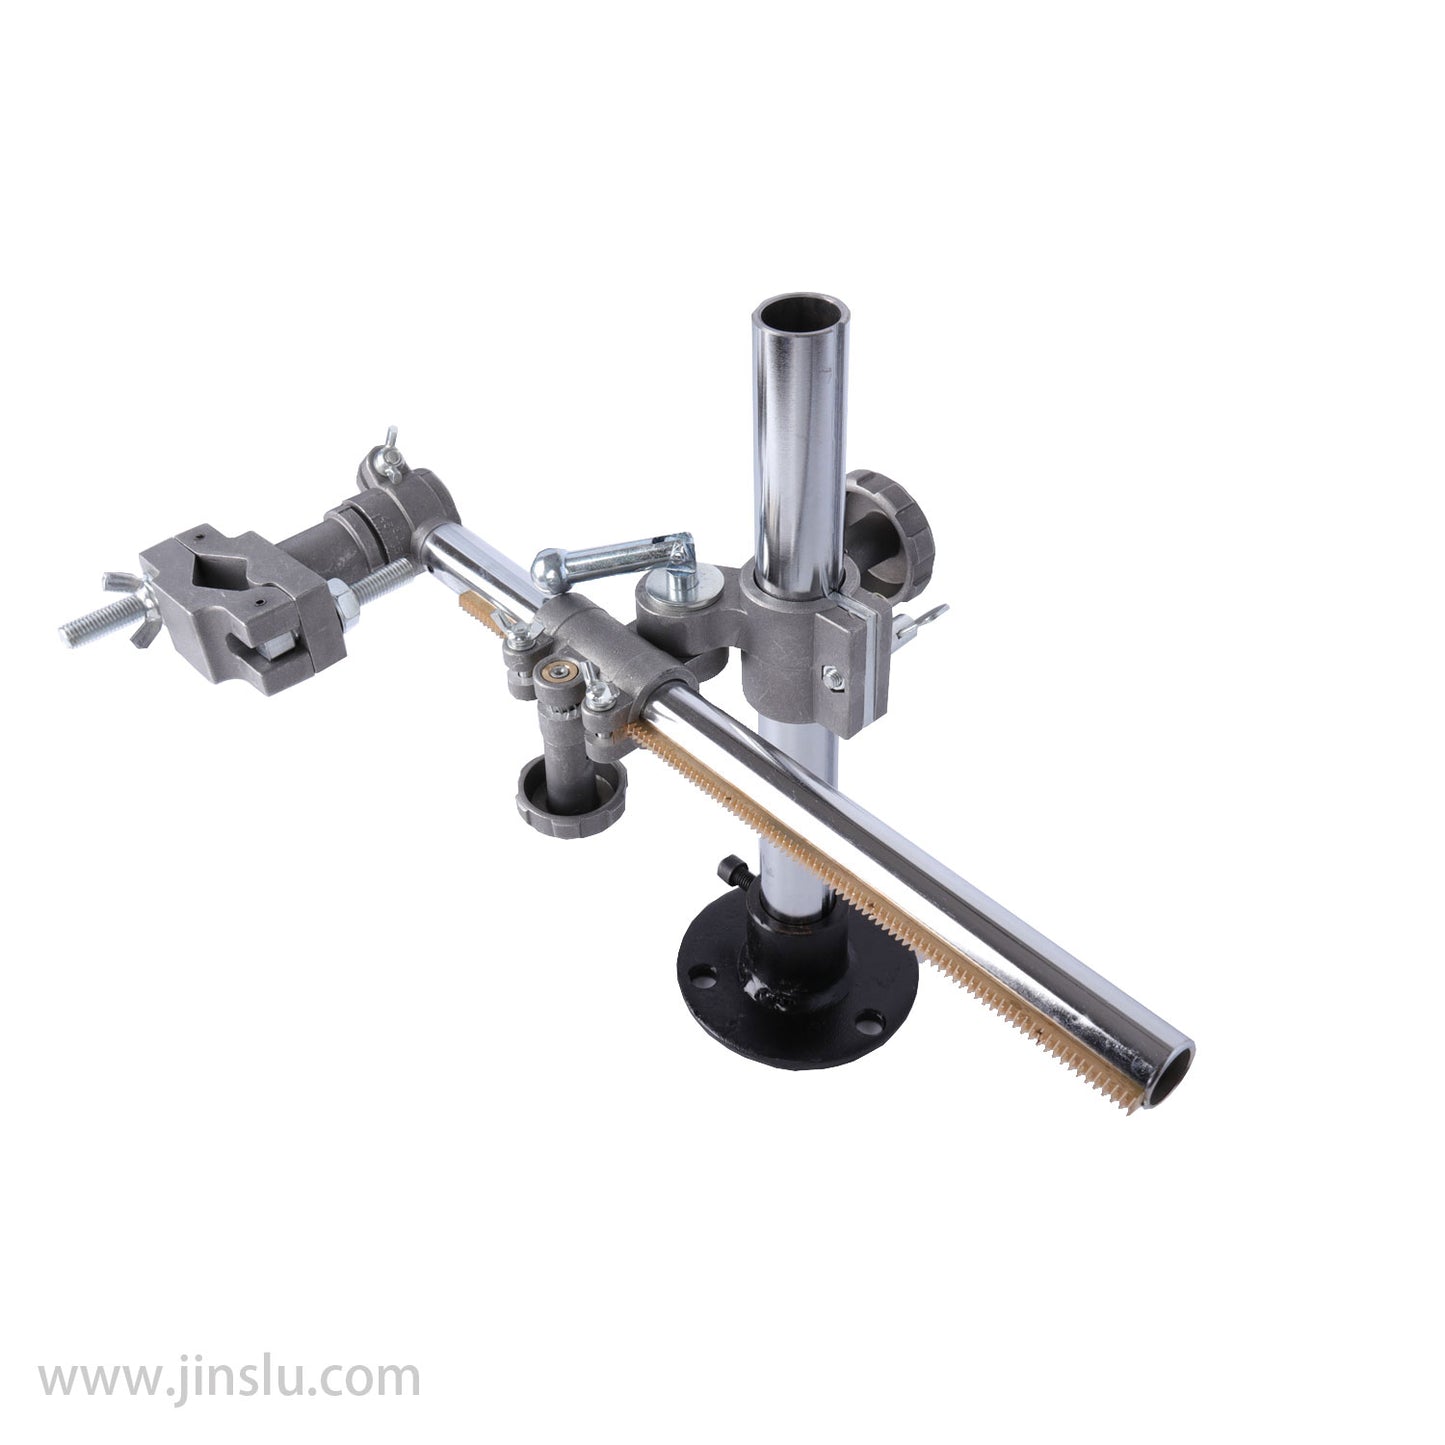 Adjustable height 30*30cm Torch support bracket Welding gun mount torch holder